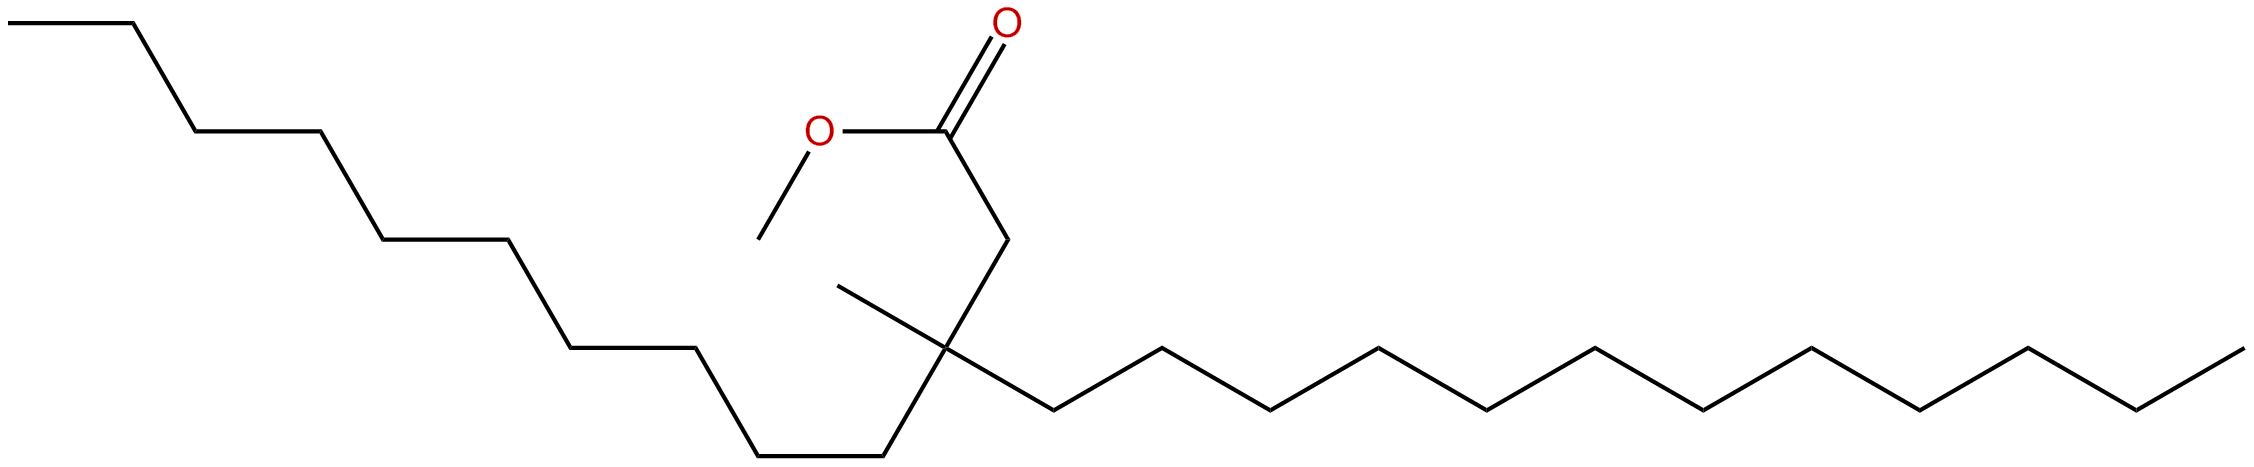 Image of methyl 3-methyl-3-decylpentadecanoate